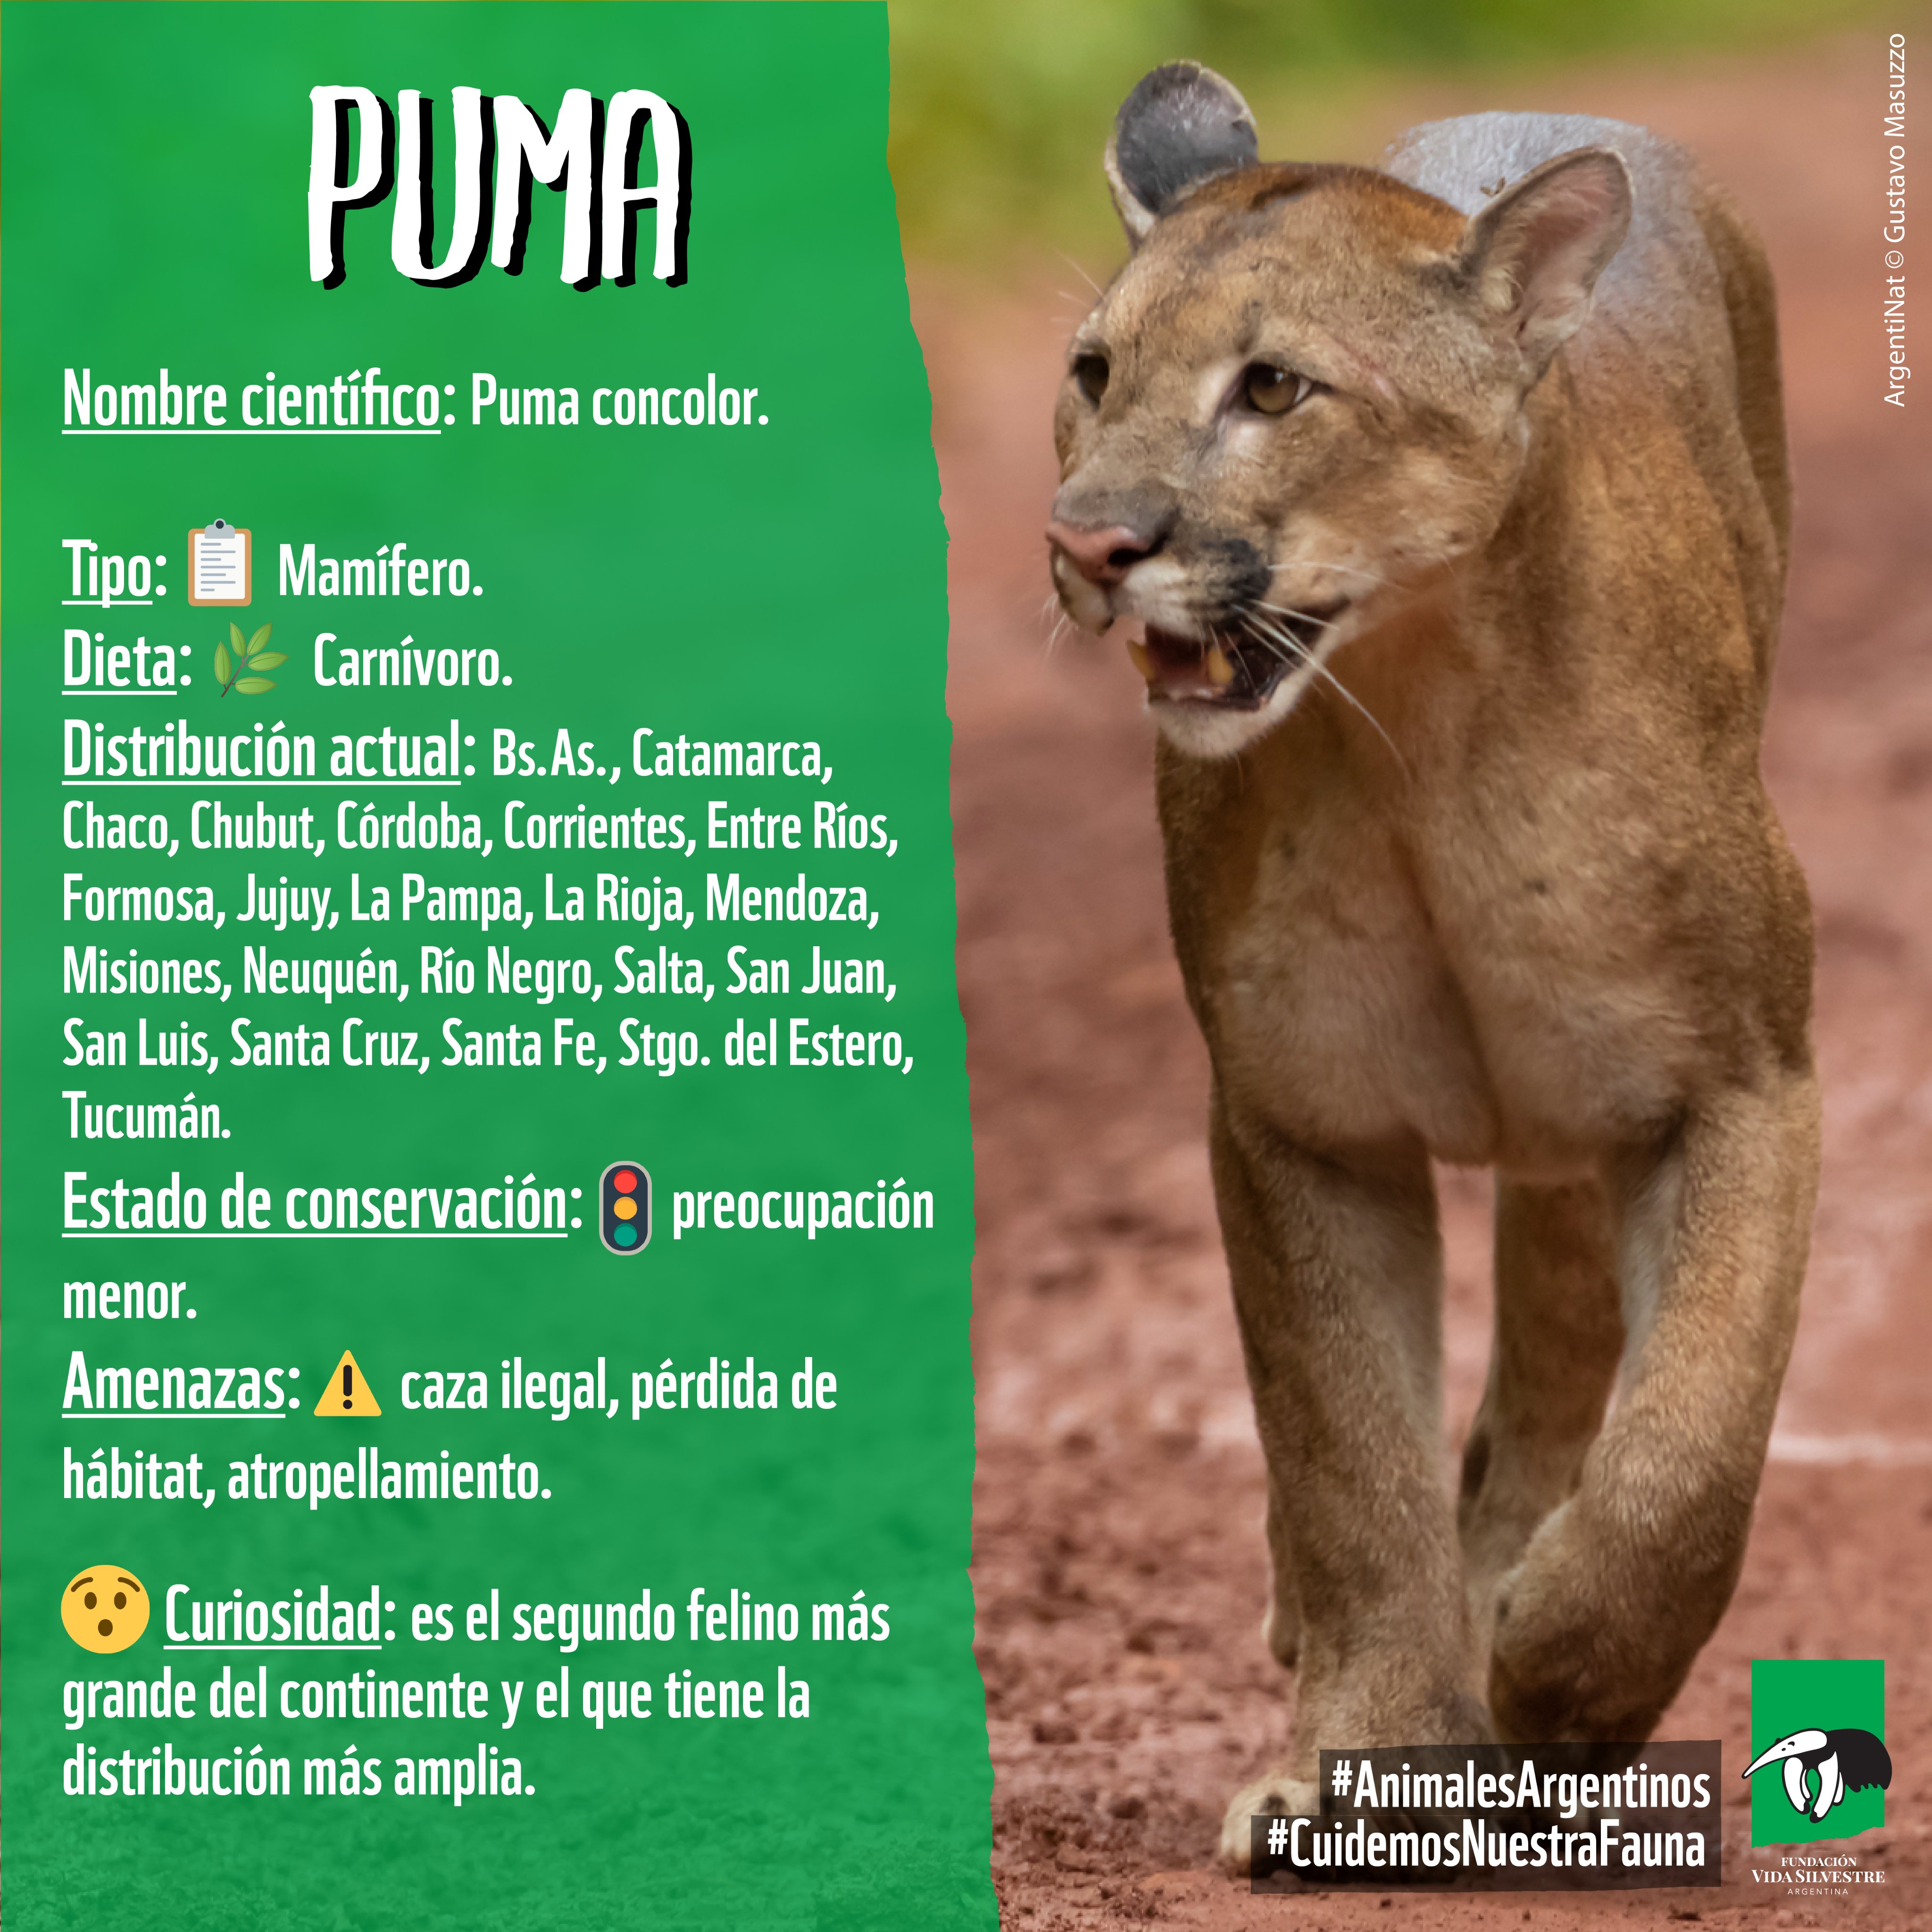 Vida Silvestre 🇦🇷 on Twitter: "⚠️ A pesar de que su de conservación es de preocupación menor (#SAREM), puma se encuentra amenazado la cacería ilegal, el #atropellamiento y